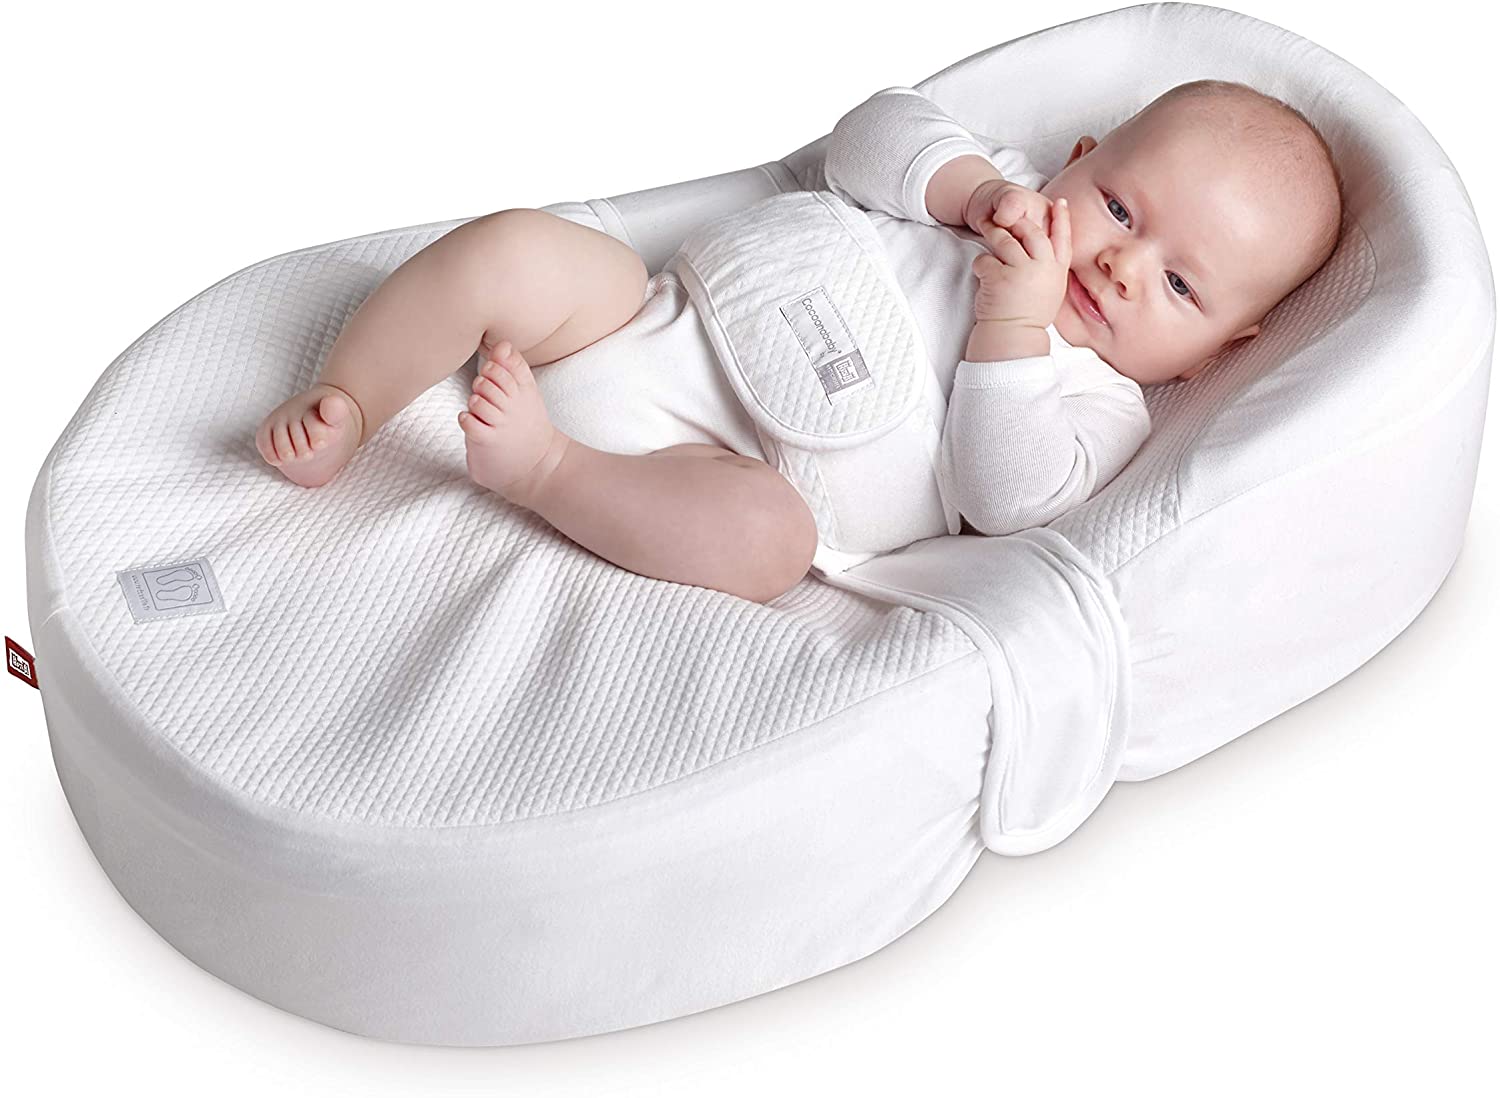 Когда можно использовать подушку для новорожденного?